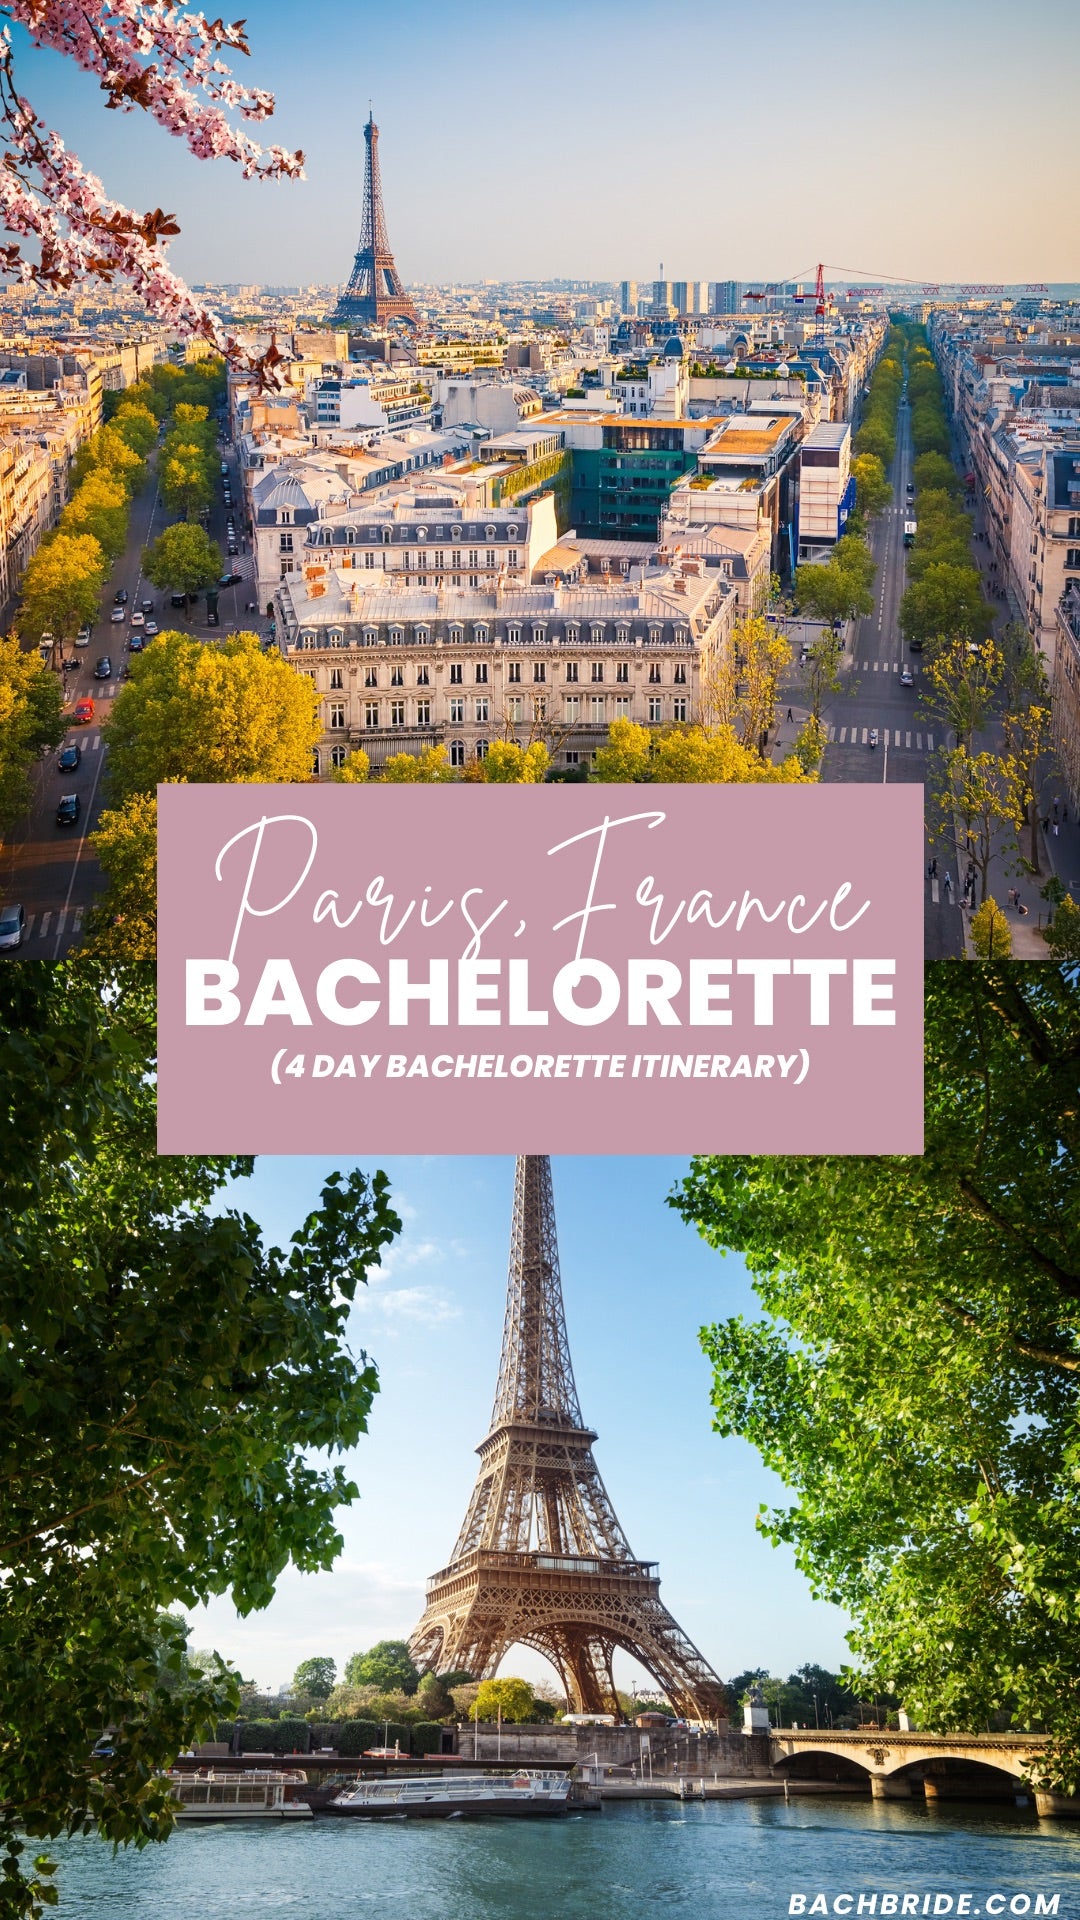 Paris Bachelorette party 